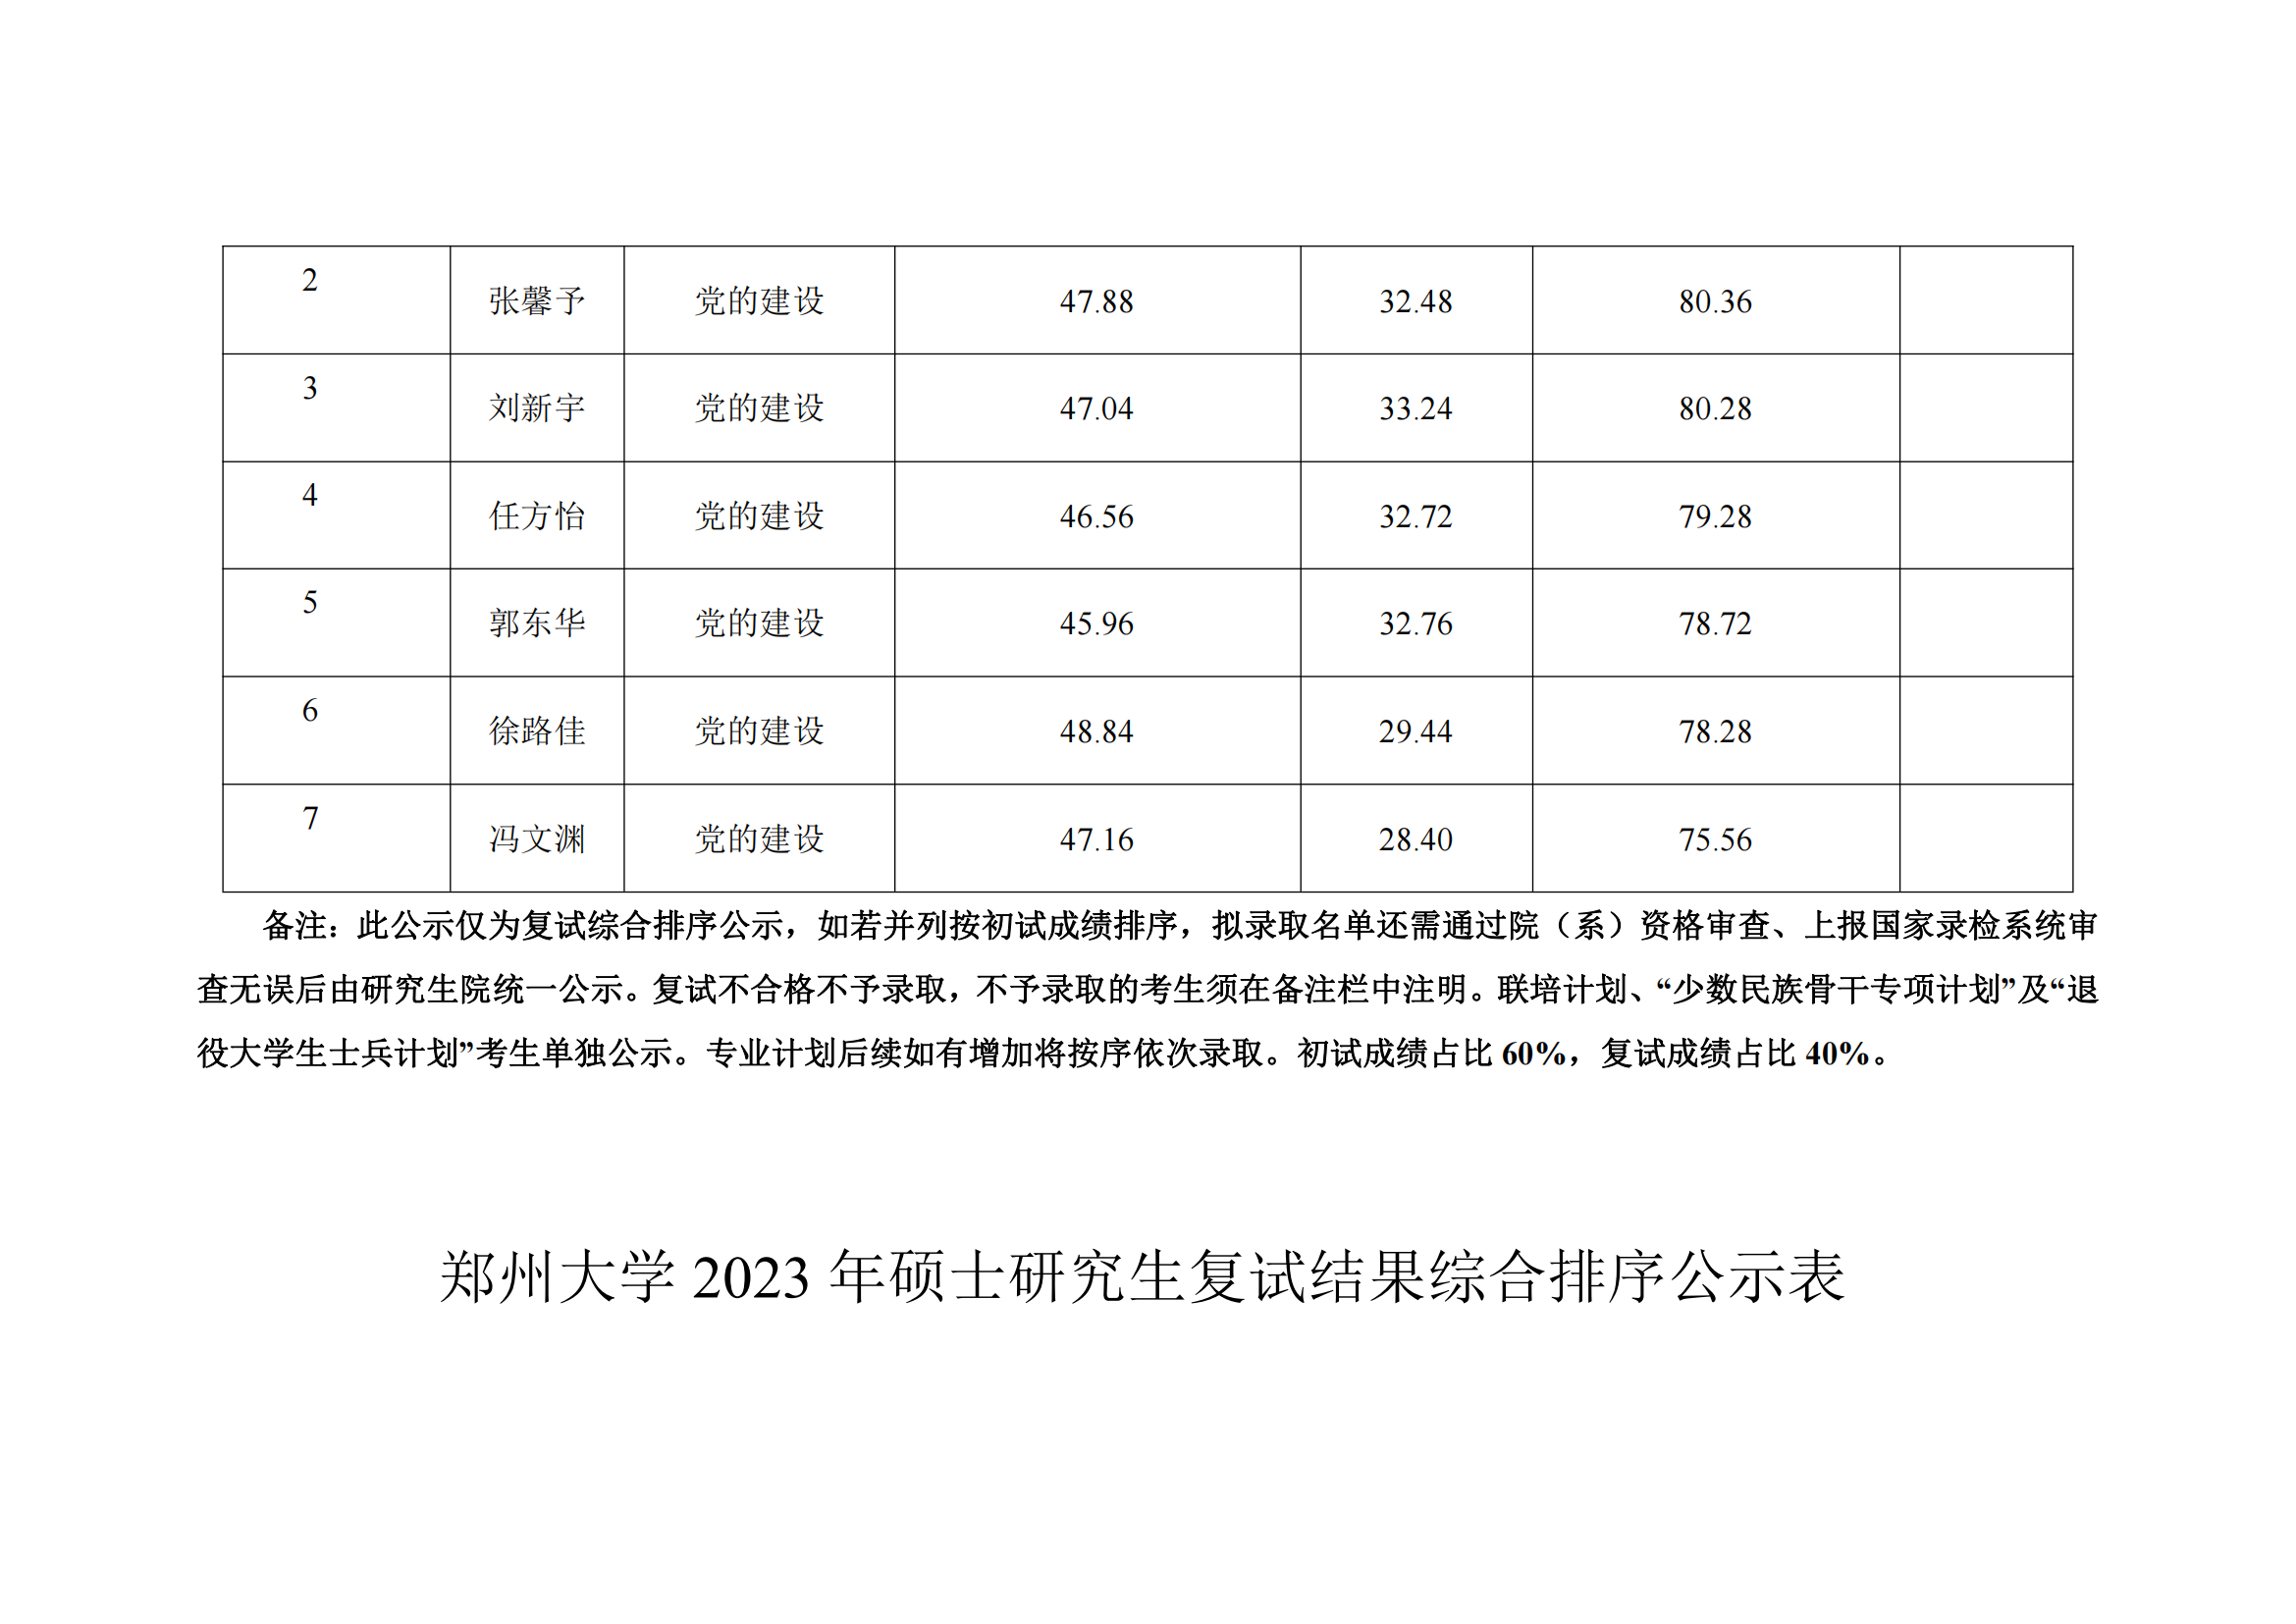 郑州大学马克思主义学院2023年硕士研究生复试结果综合排序公示表_16.png